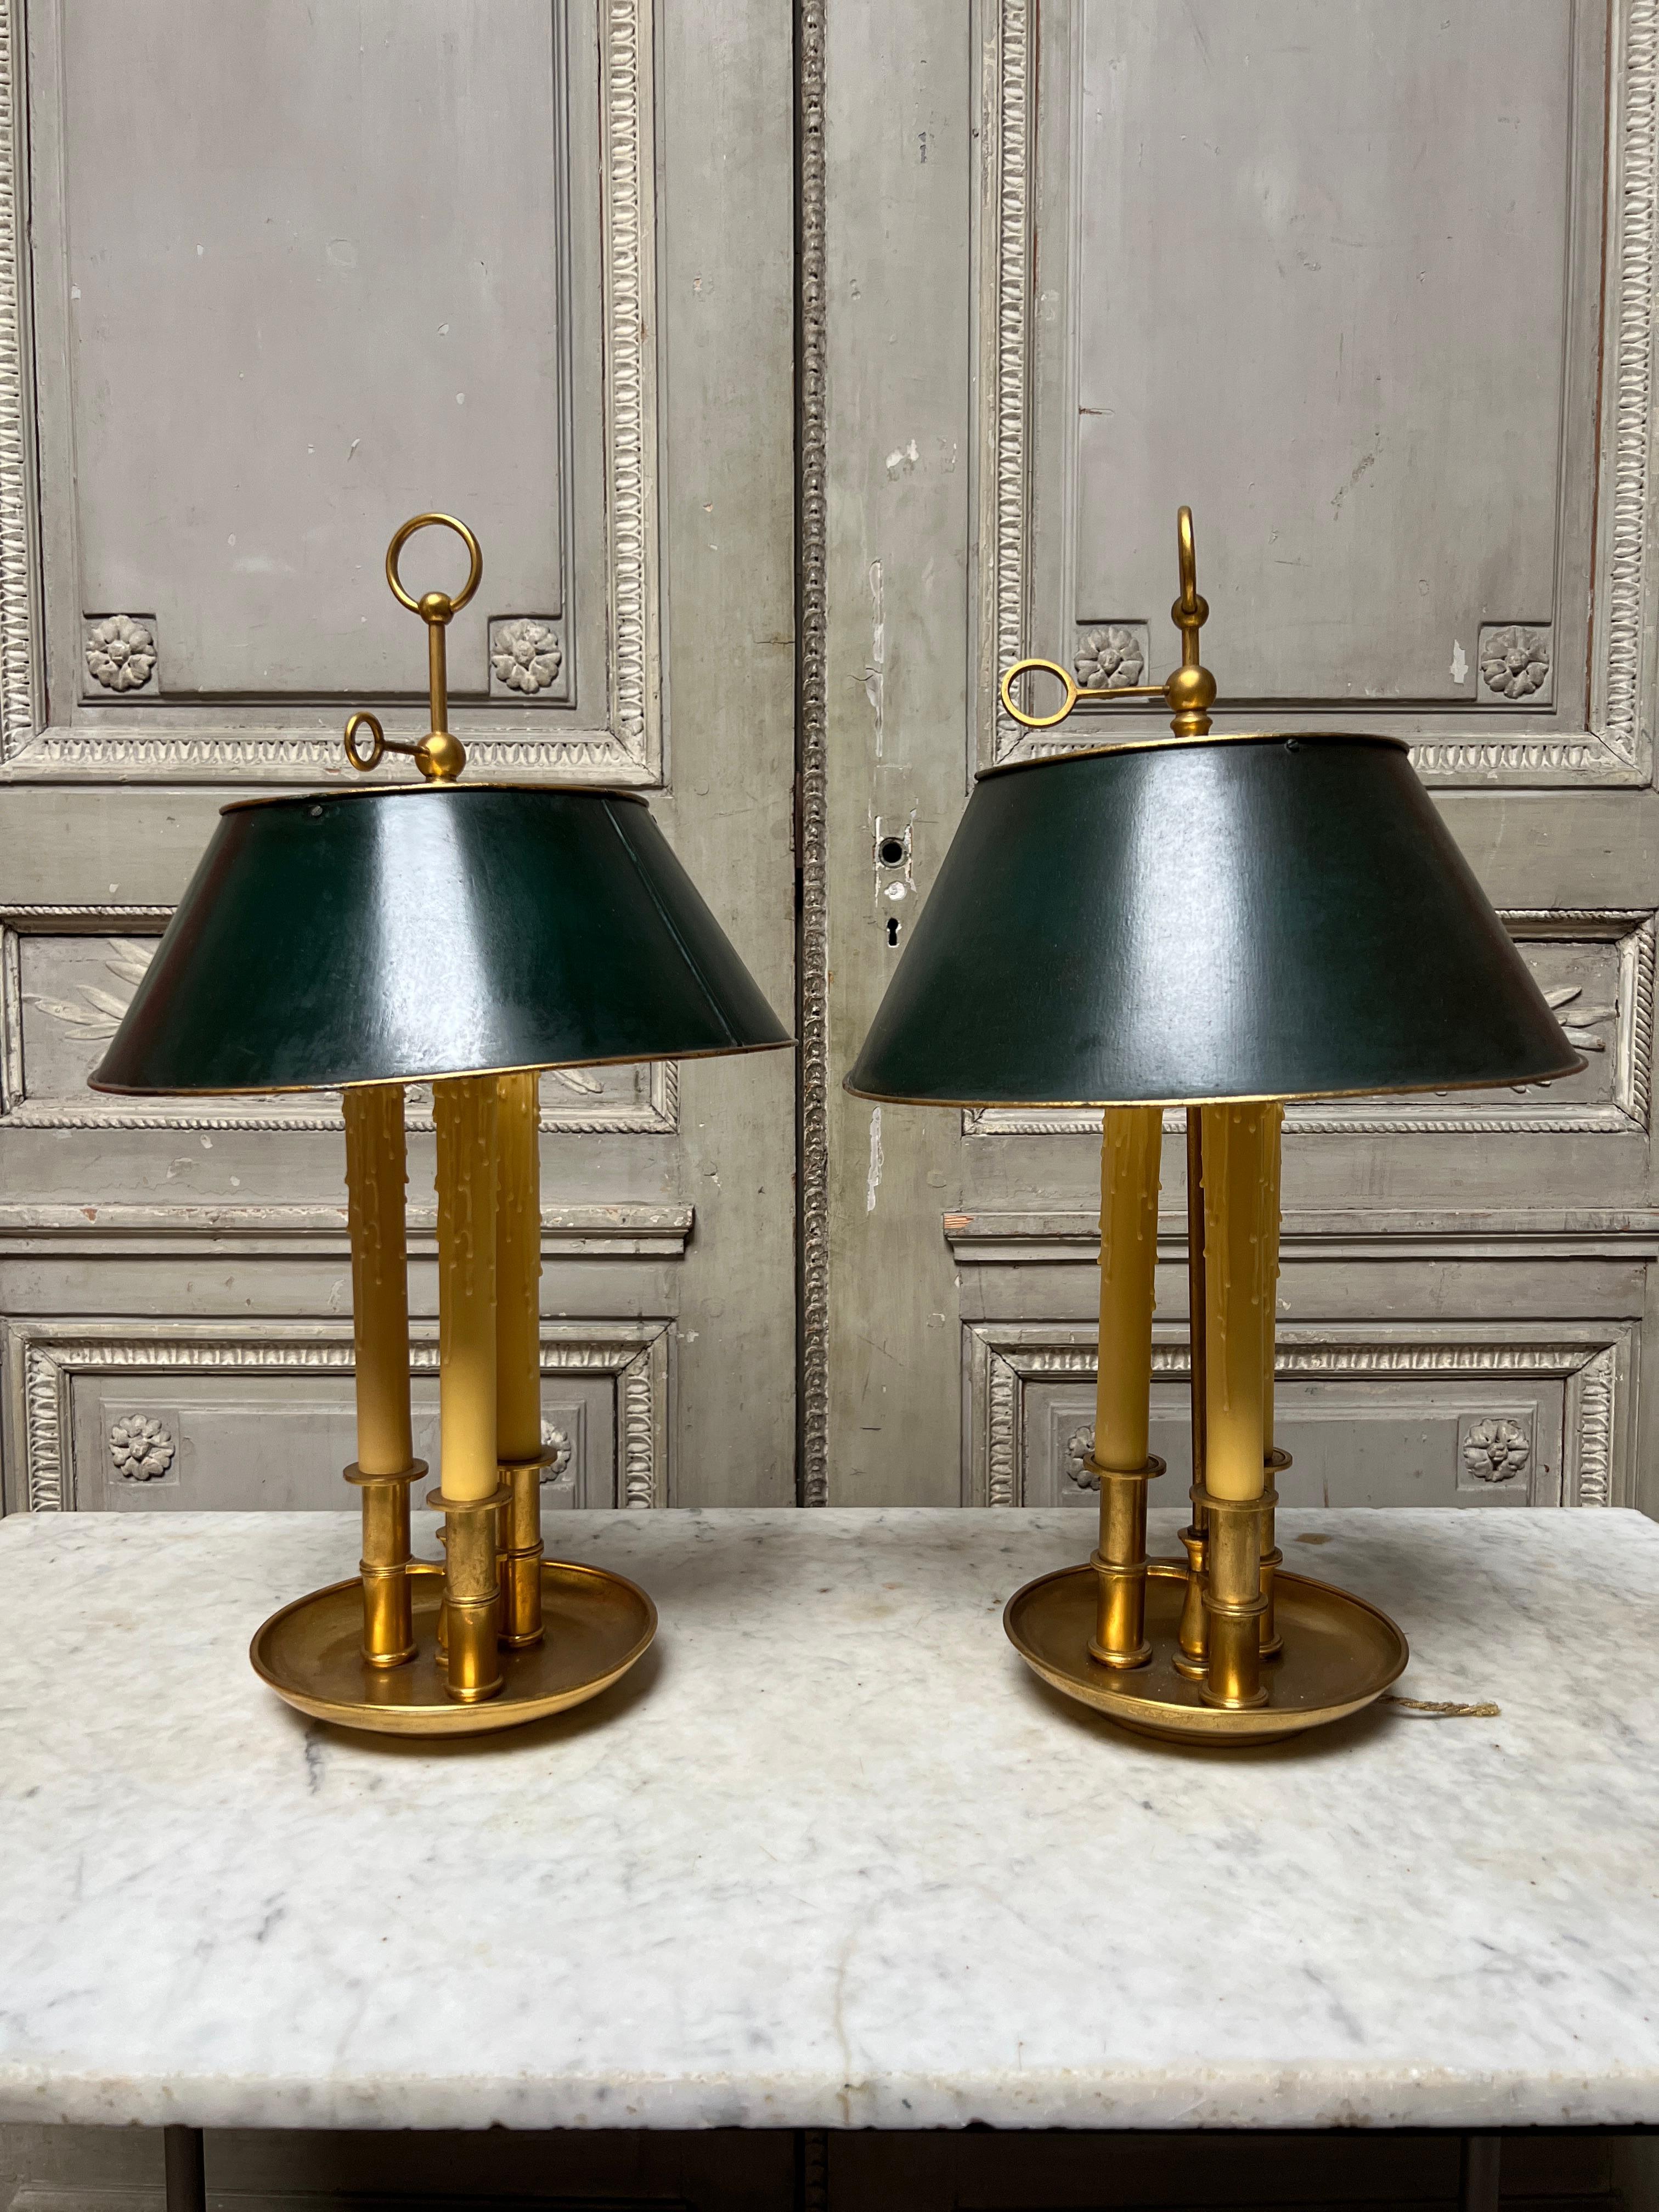 Paire de lampes bouillottes en laiton de style Louis XVI avec des abat-jours ajustables en tole peint en vert.  
Ces lampes très fonctionnelles et décoratives ont besoin d'un nouveau câblage qui peut être réalisé sur place moyennant un supplément.  